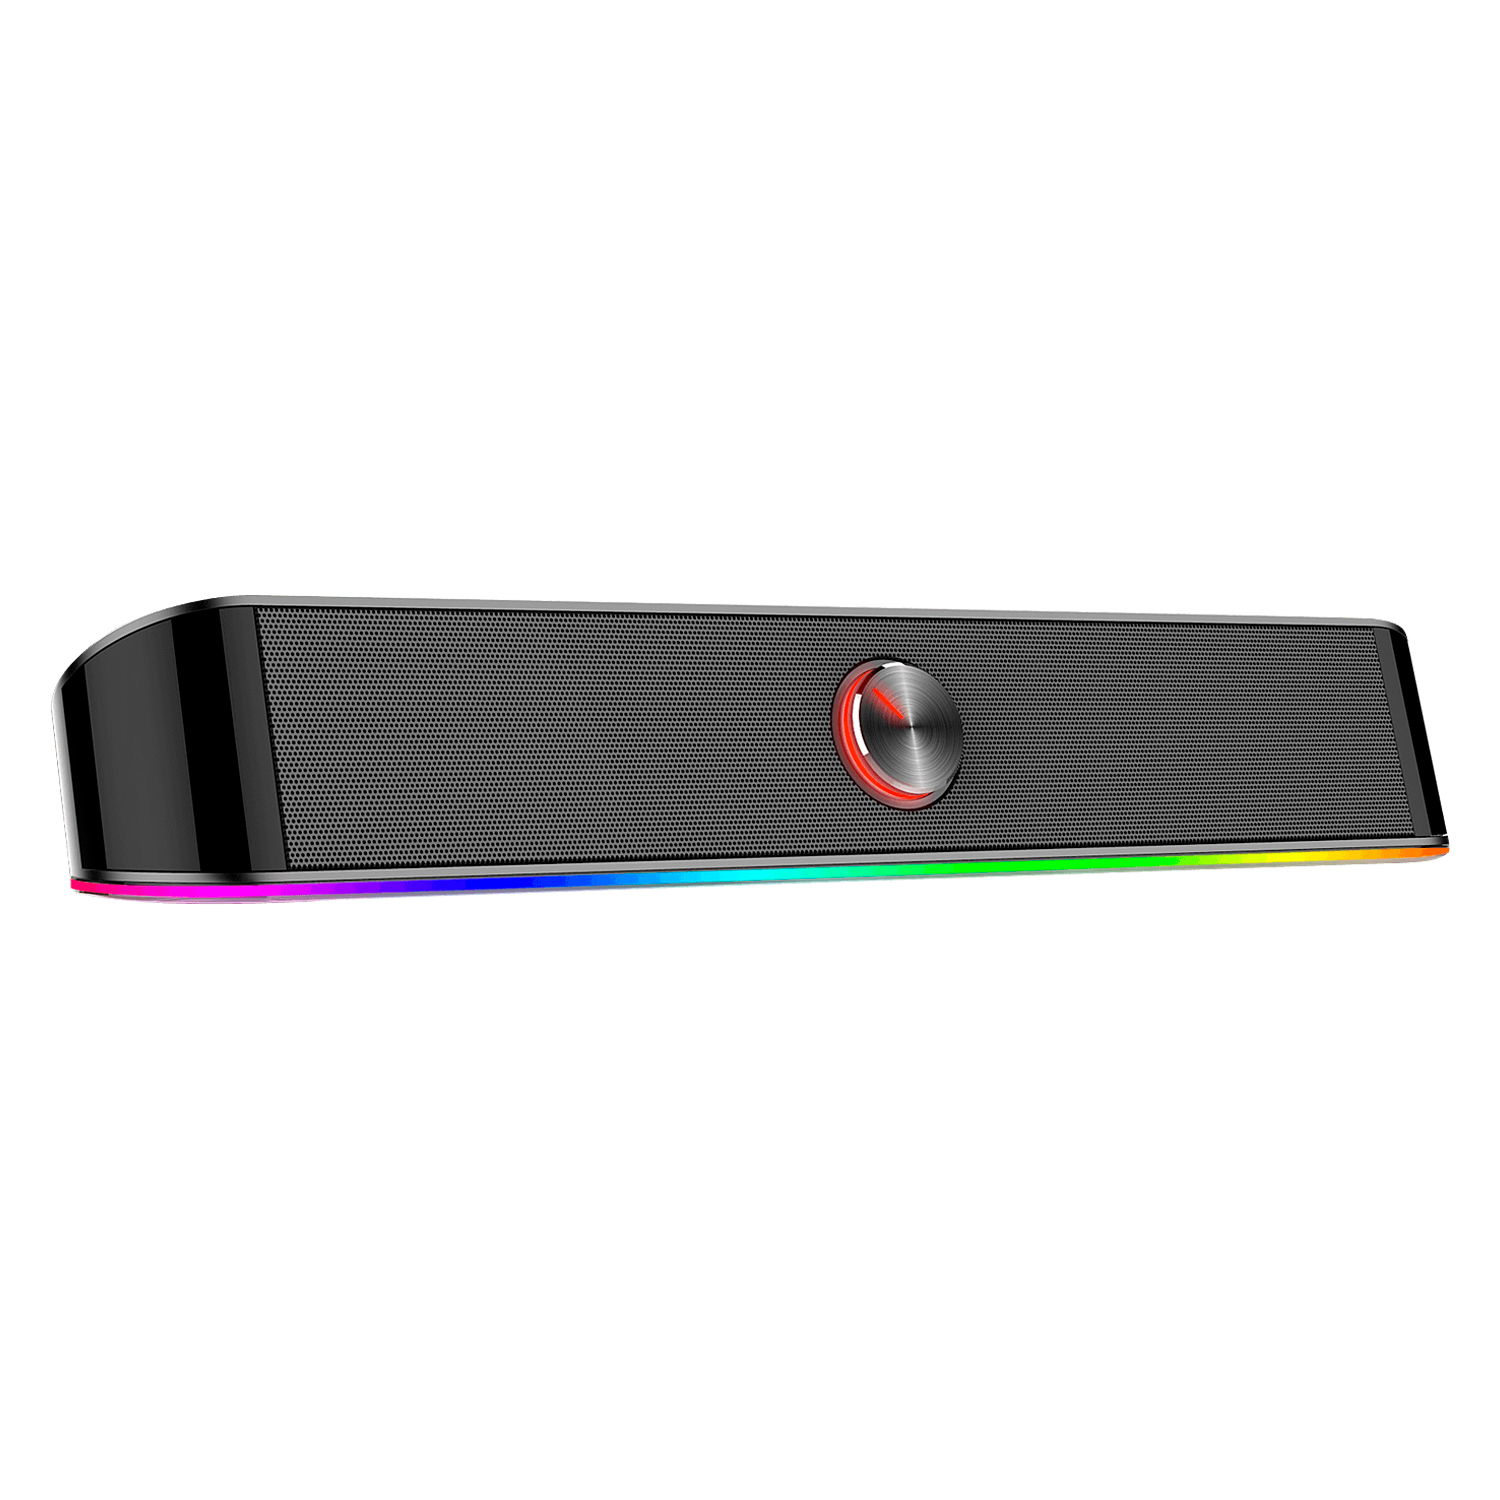 Caixa de Som Redragon Adiemus GS560 USB P2 Auxiliar RGB - Preto